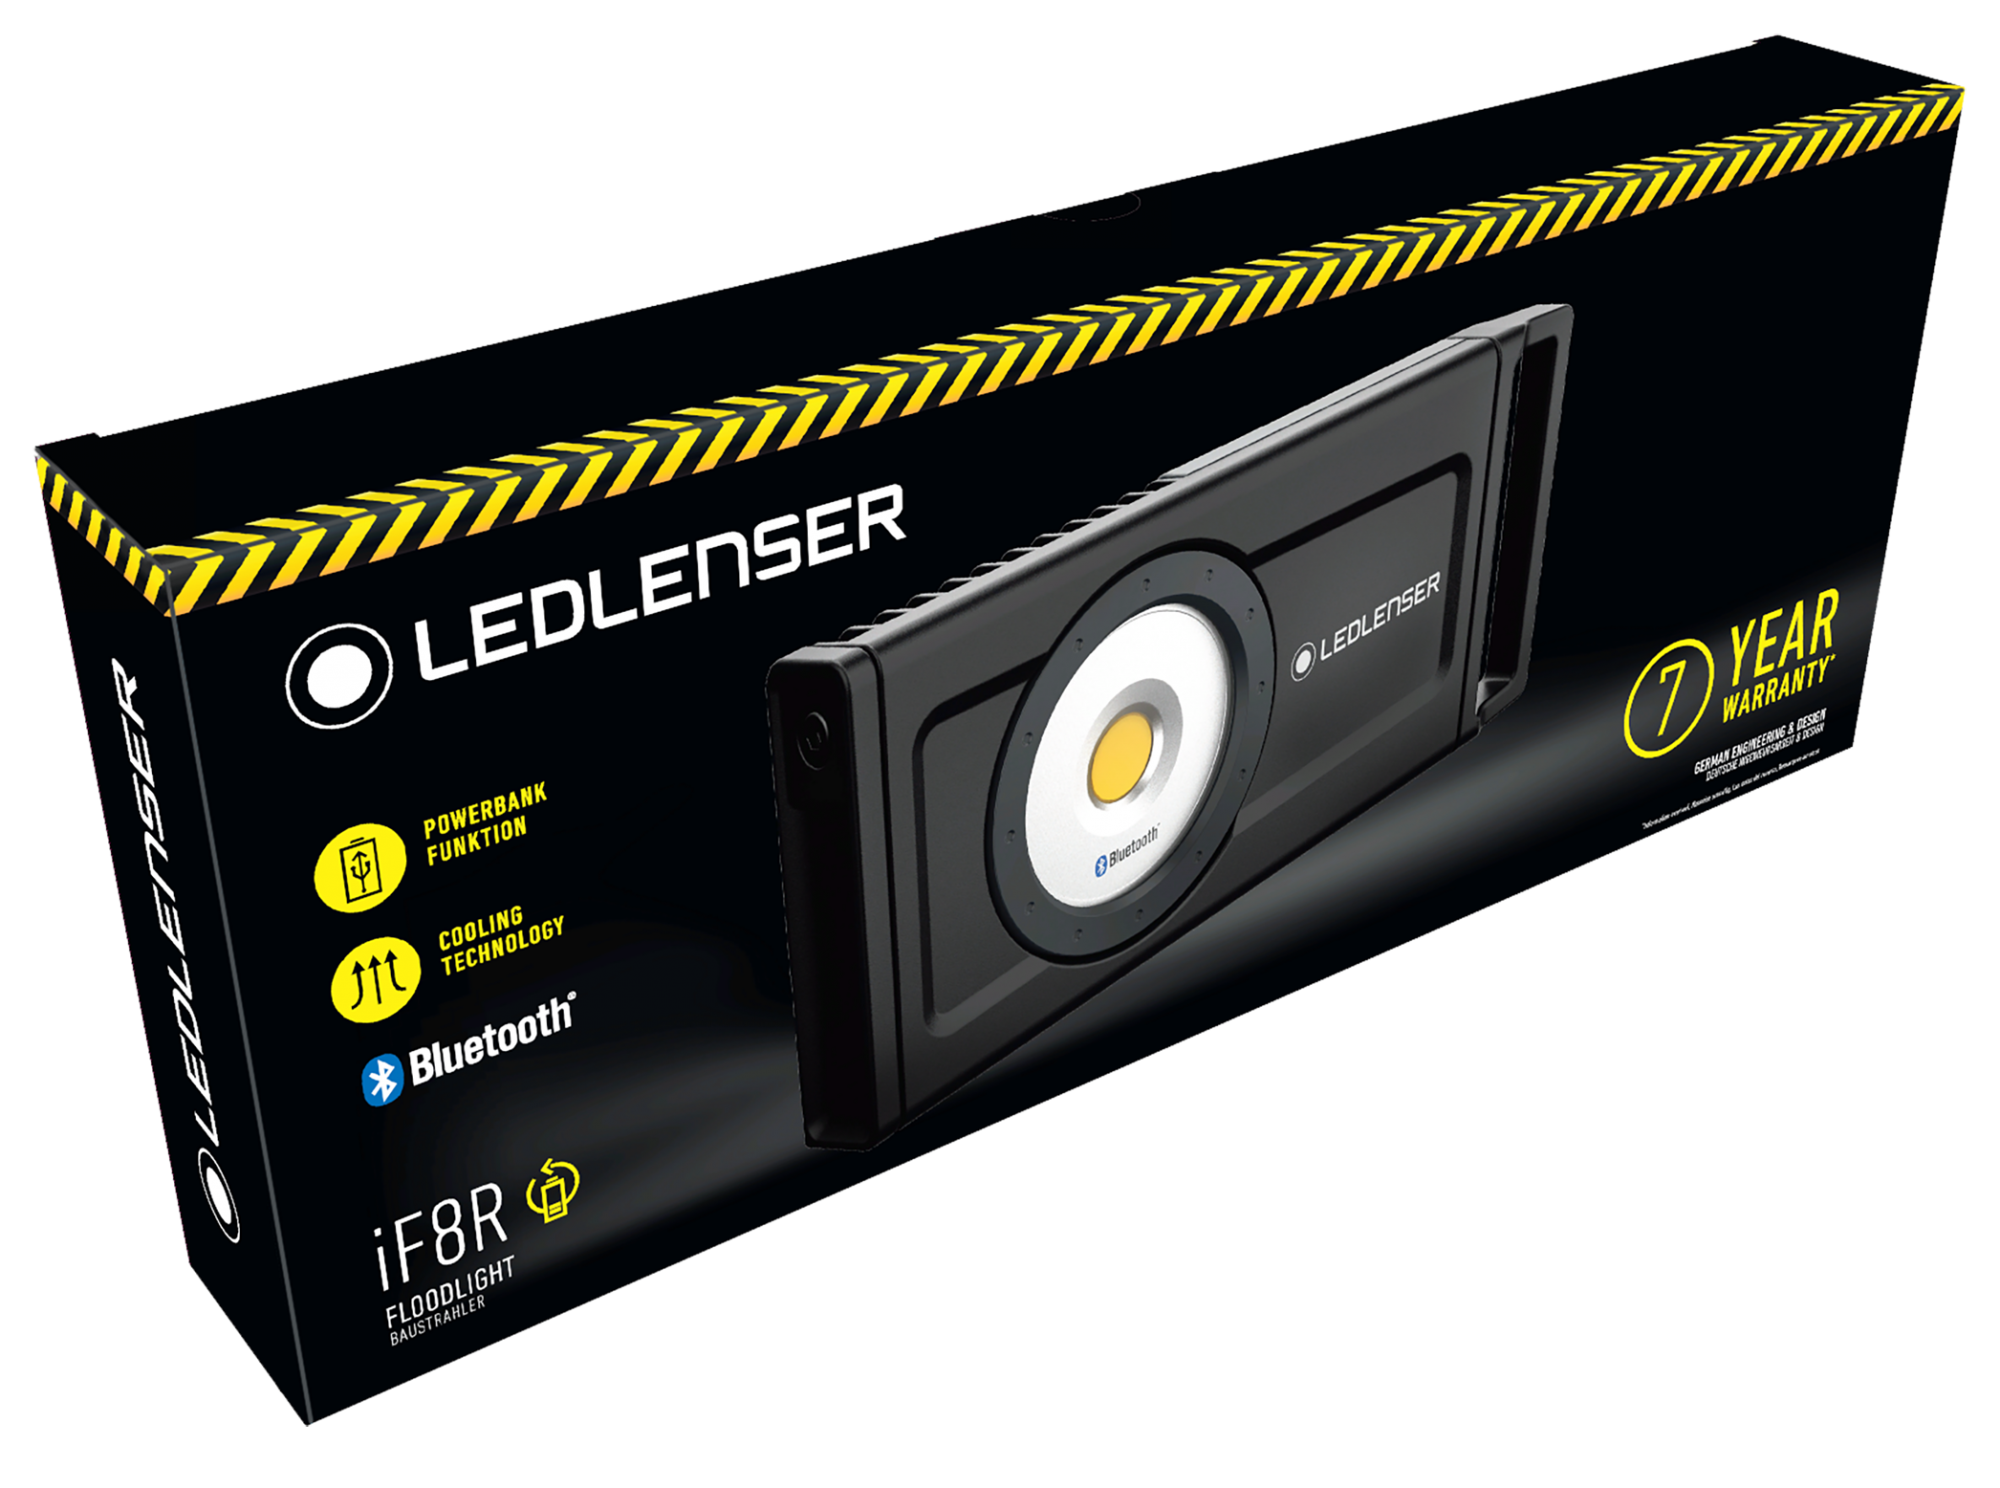 Led Lenser Multifunktionsleuchte iF8R